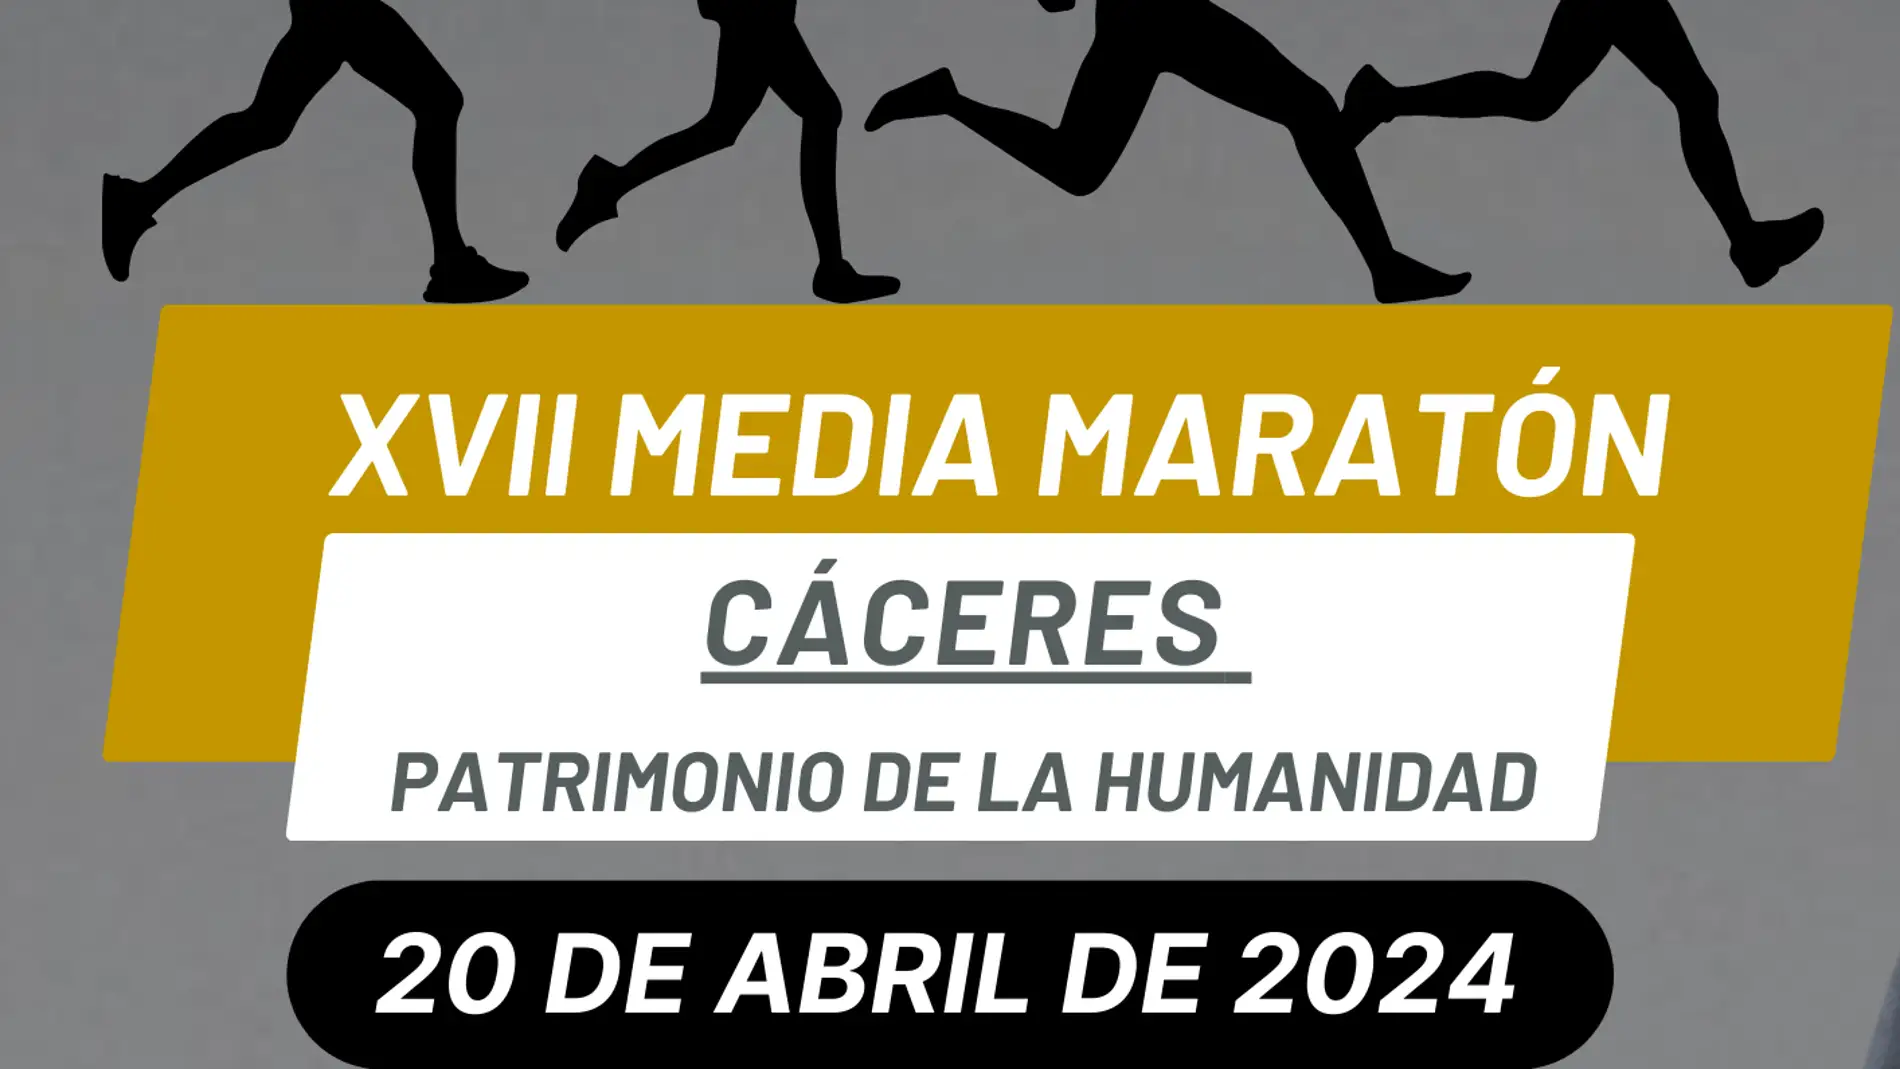 La XVII Media Maratón Cáceres Patrimonio de la Humanidad será el 20 de abril y como novedad tendrá recorrido nocturno